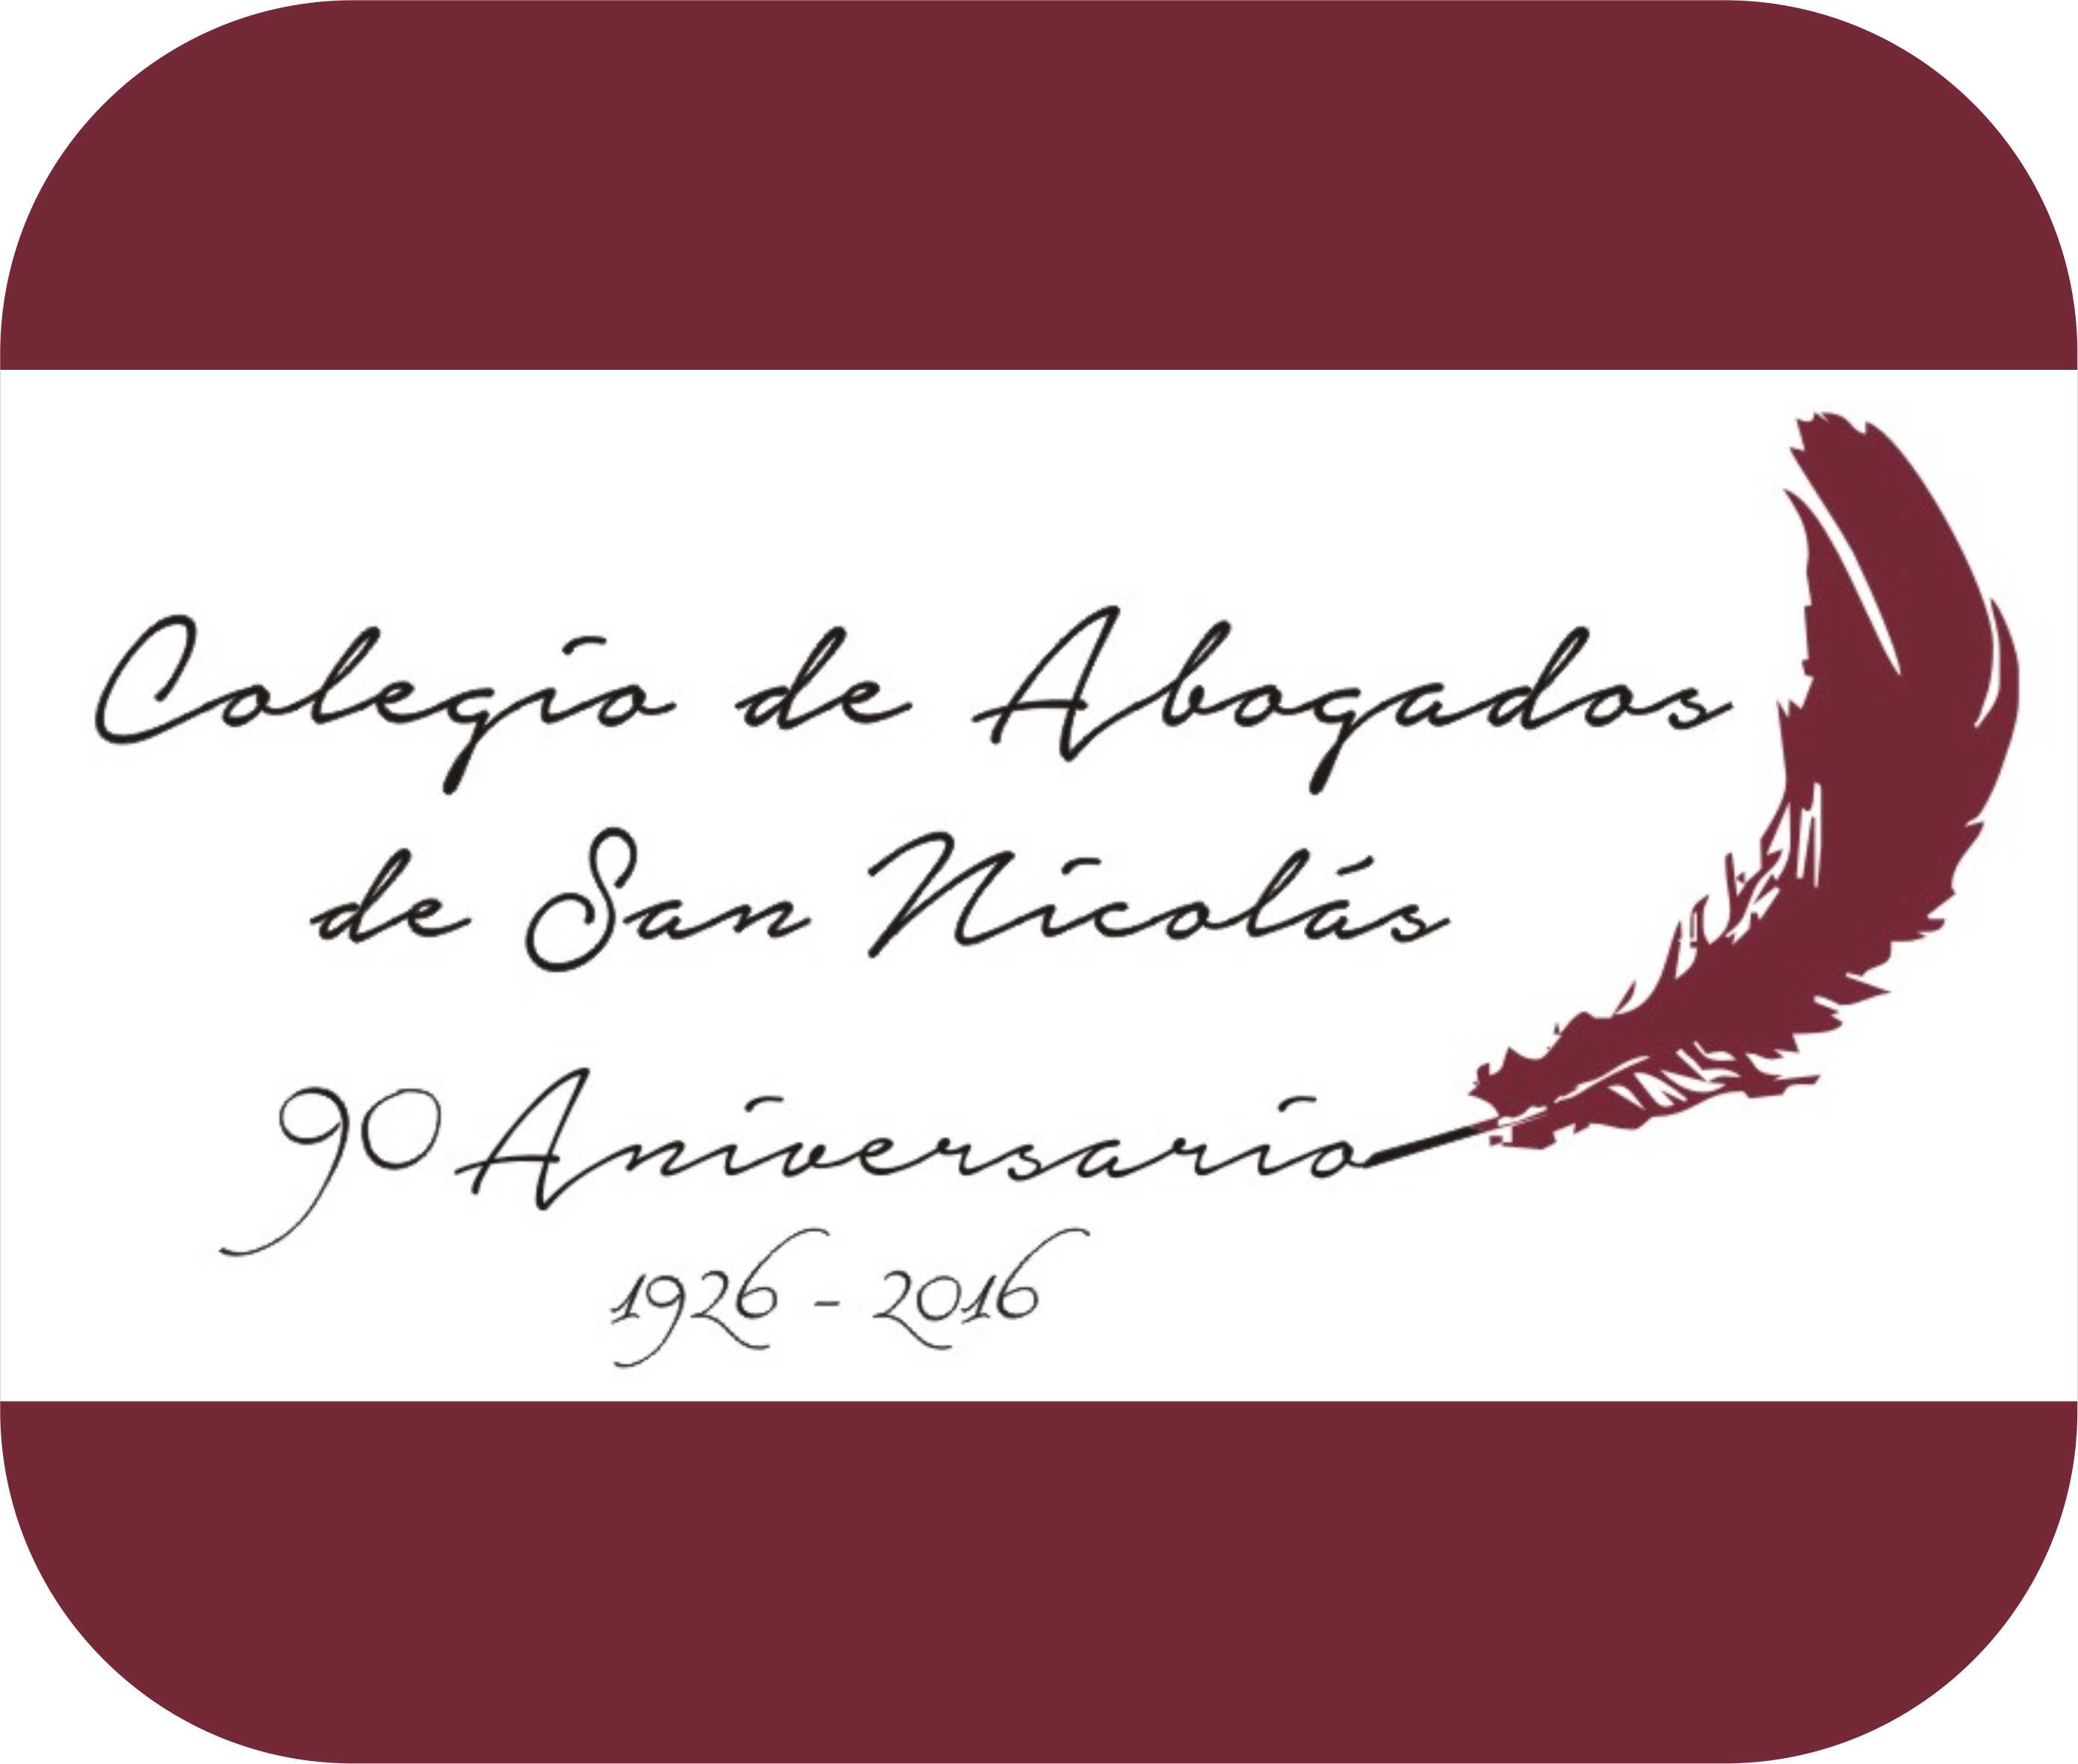 Festejos por el 90º Aniversario del Colegio de Abogados de San Nicolás